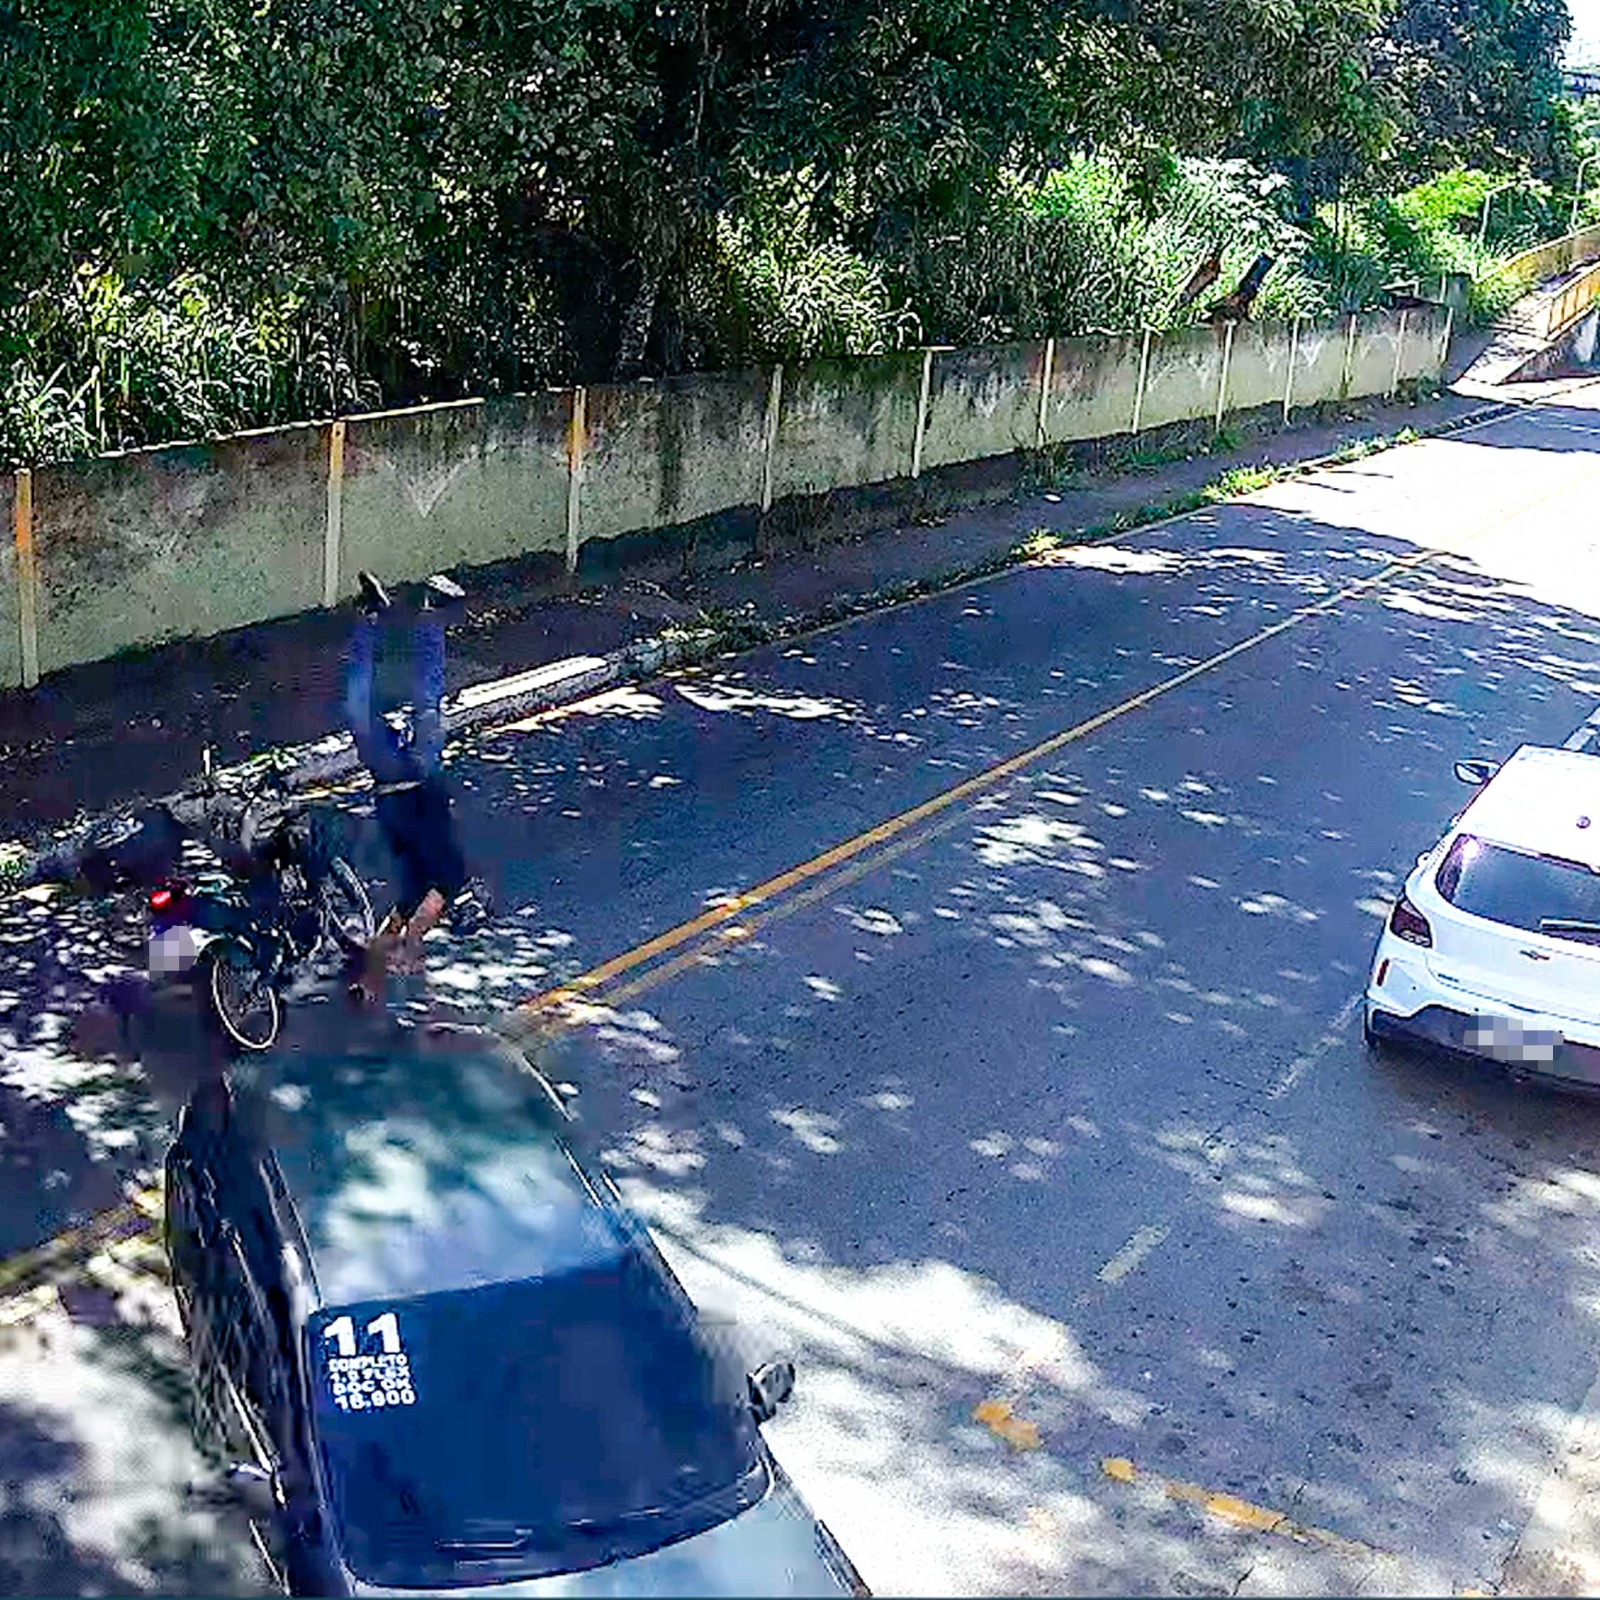 Imagens de câmera auxiliarão investigação de acidente de trânsito em VR